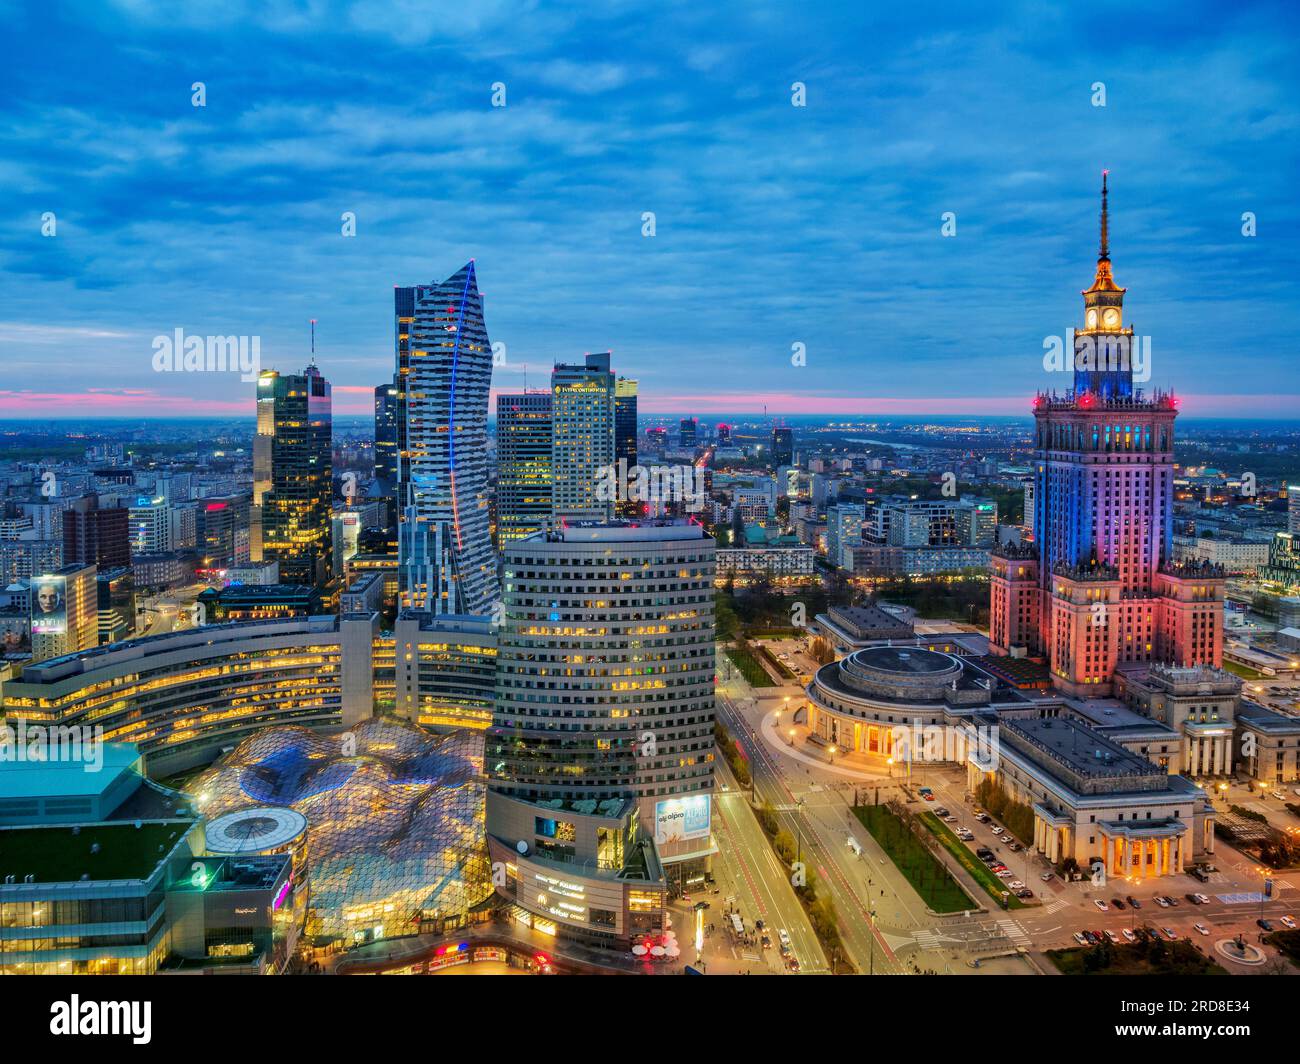 Skyline du centre-ville et Palais de la Culture et de la Science au crépuscule, vue surélevée, Varsovie, Voïvodie de Masovie, Pologne, Europe Banque D'Images